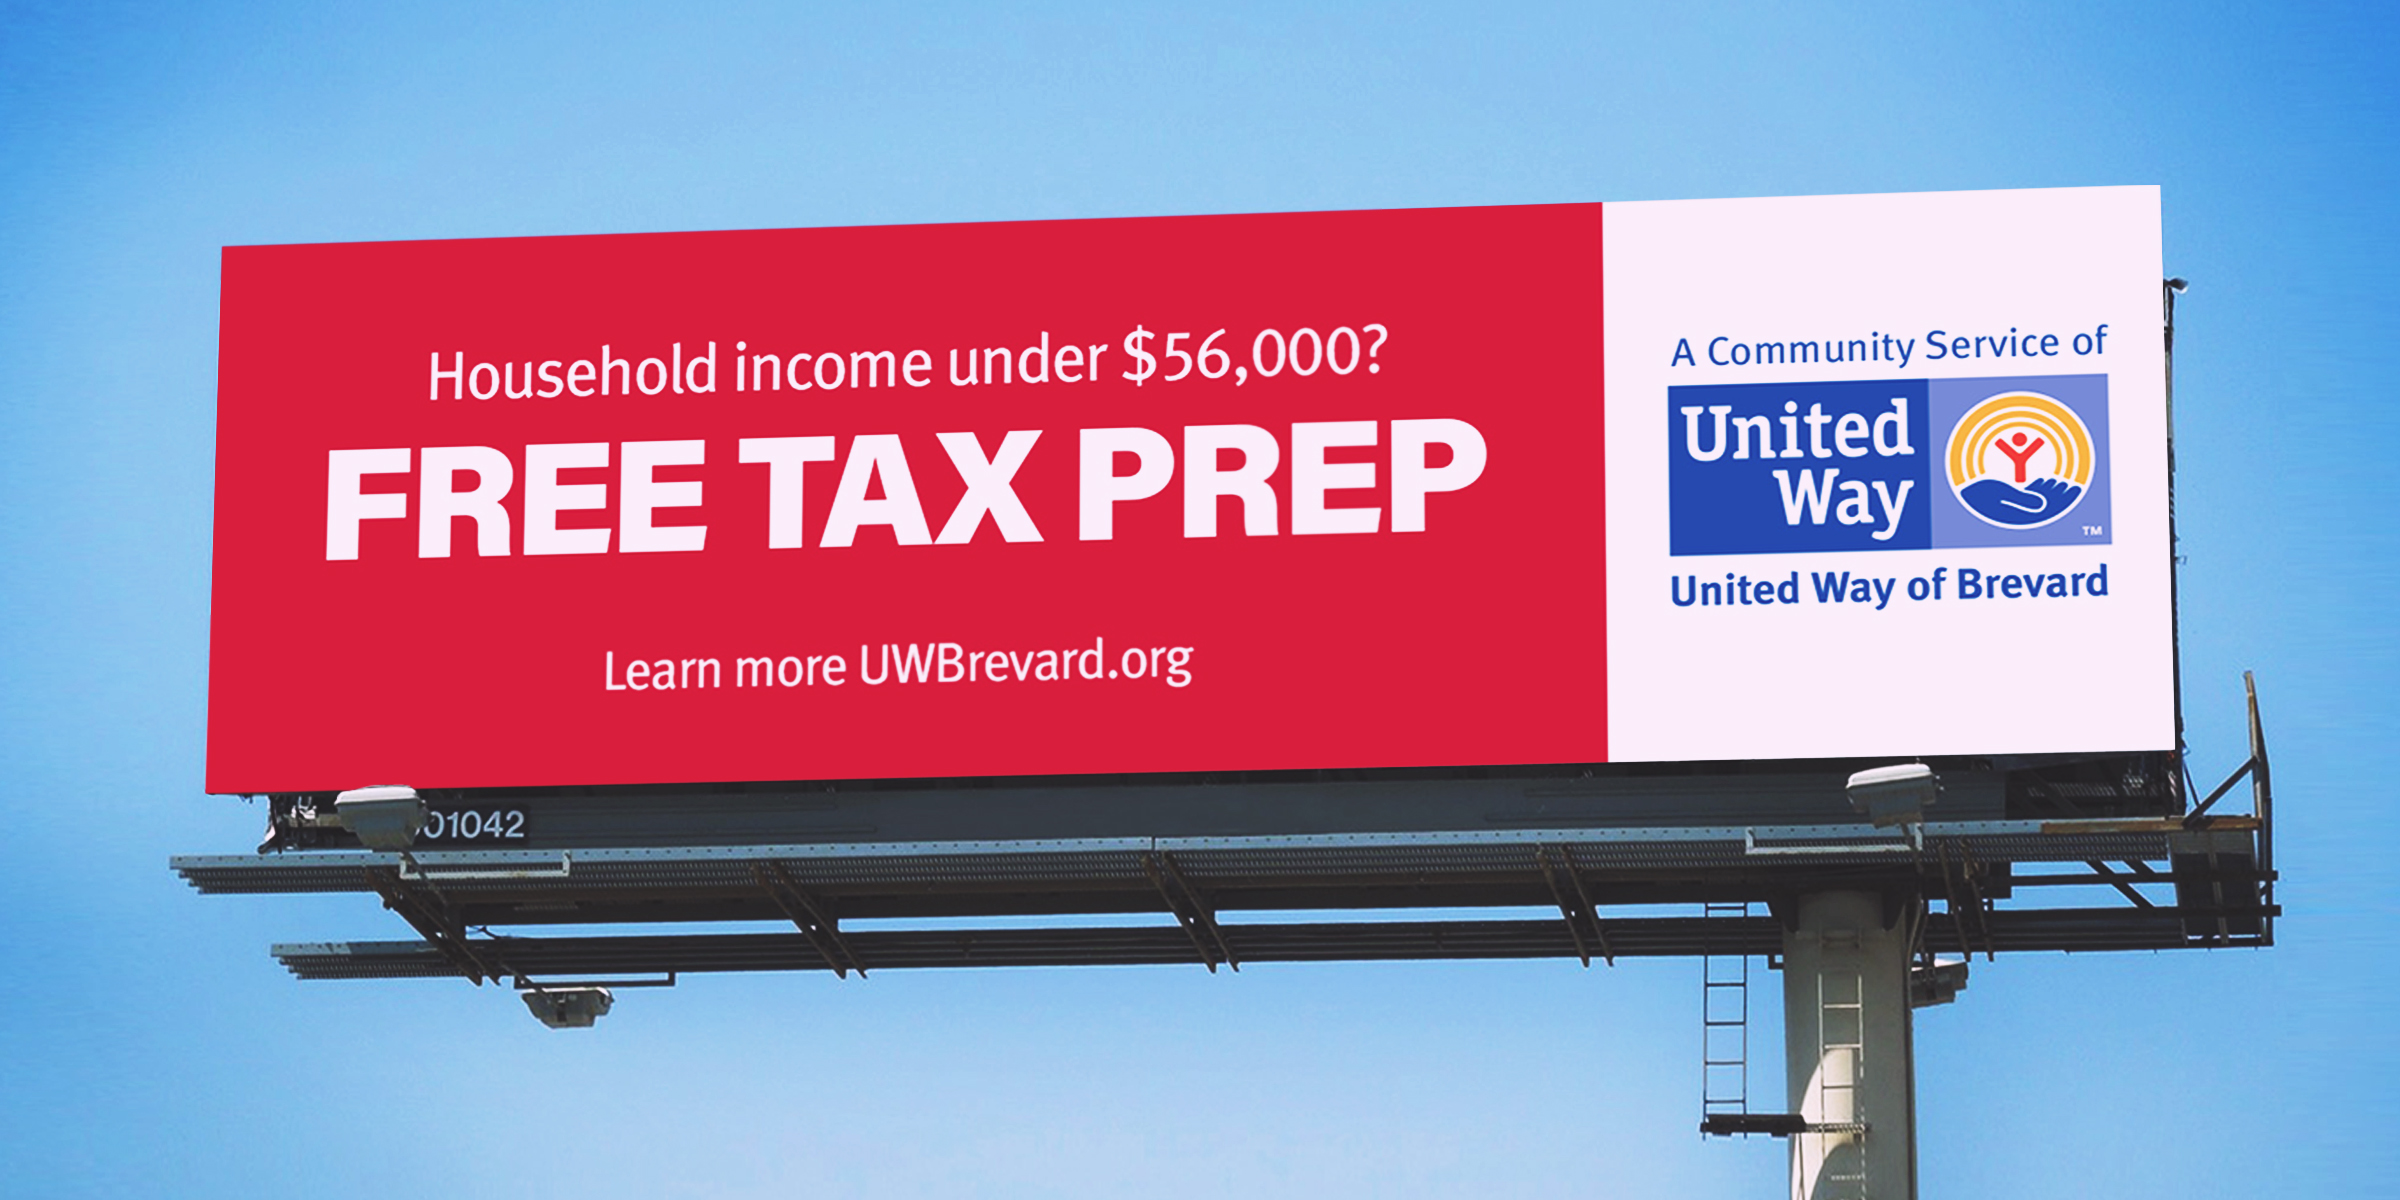 united way taxes billboard